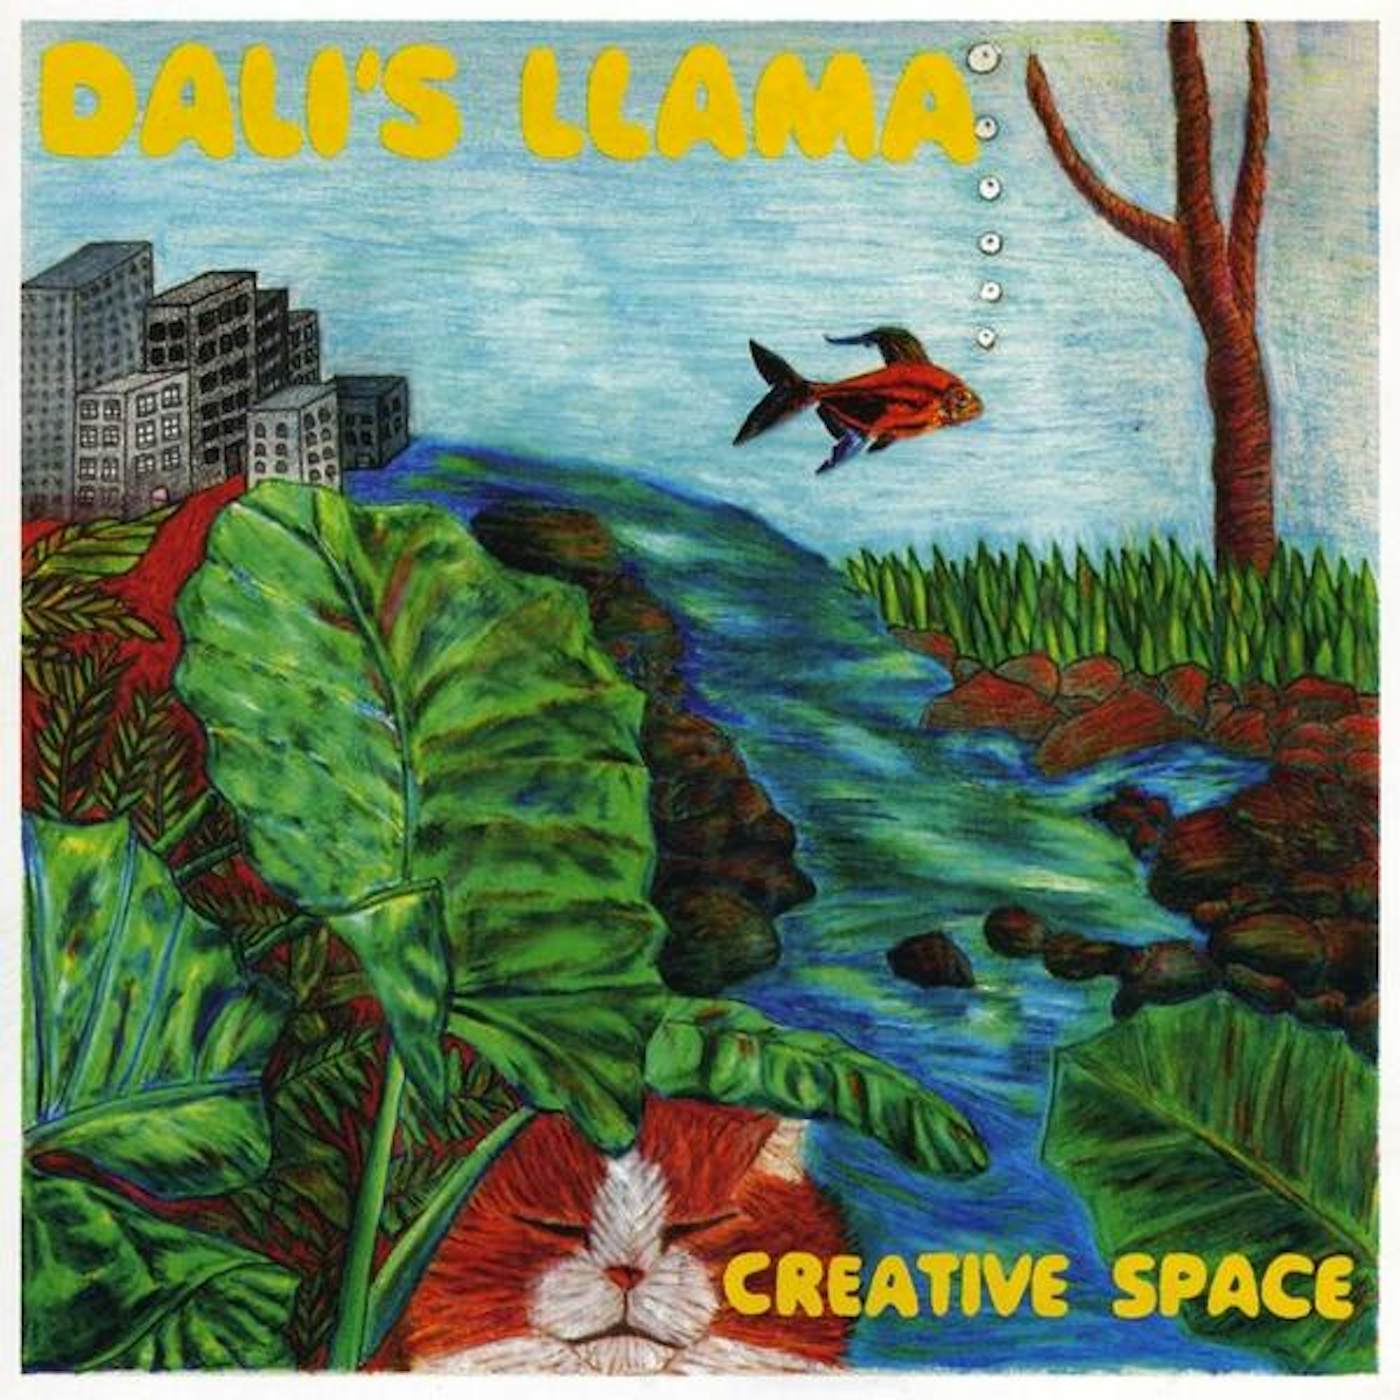 Dali's Llama CREATIVE SPACE CD